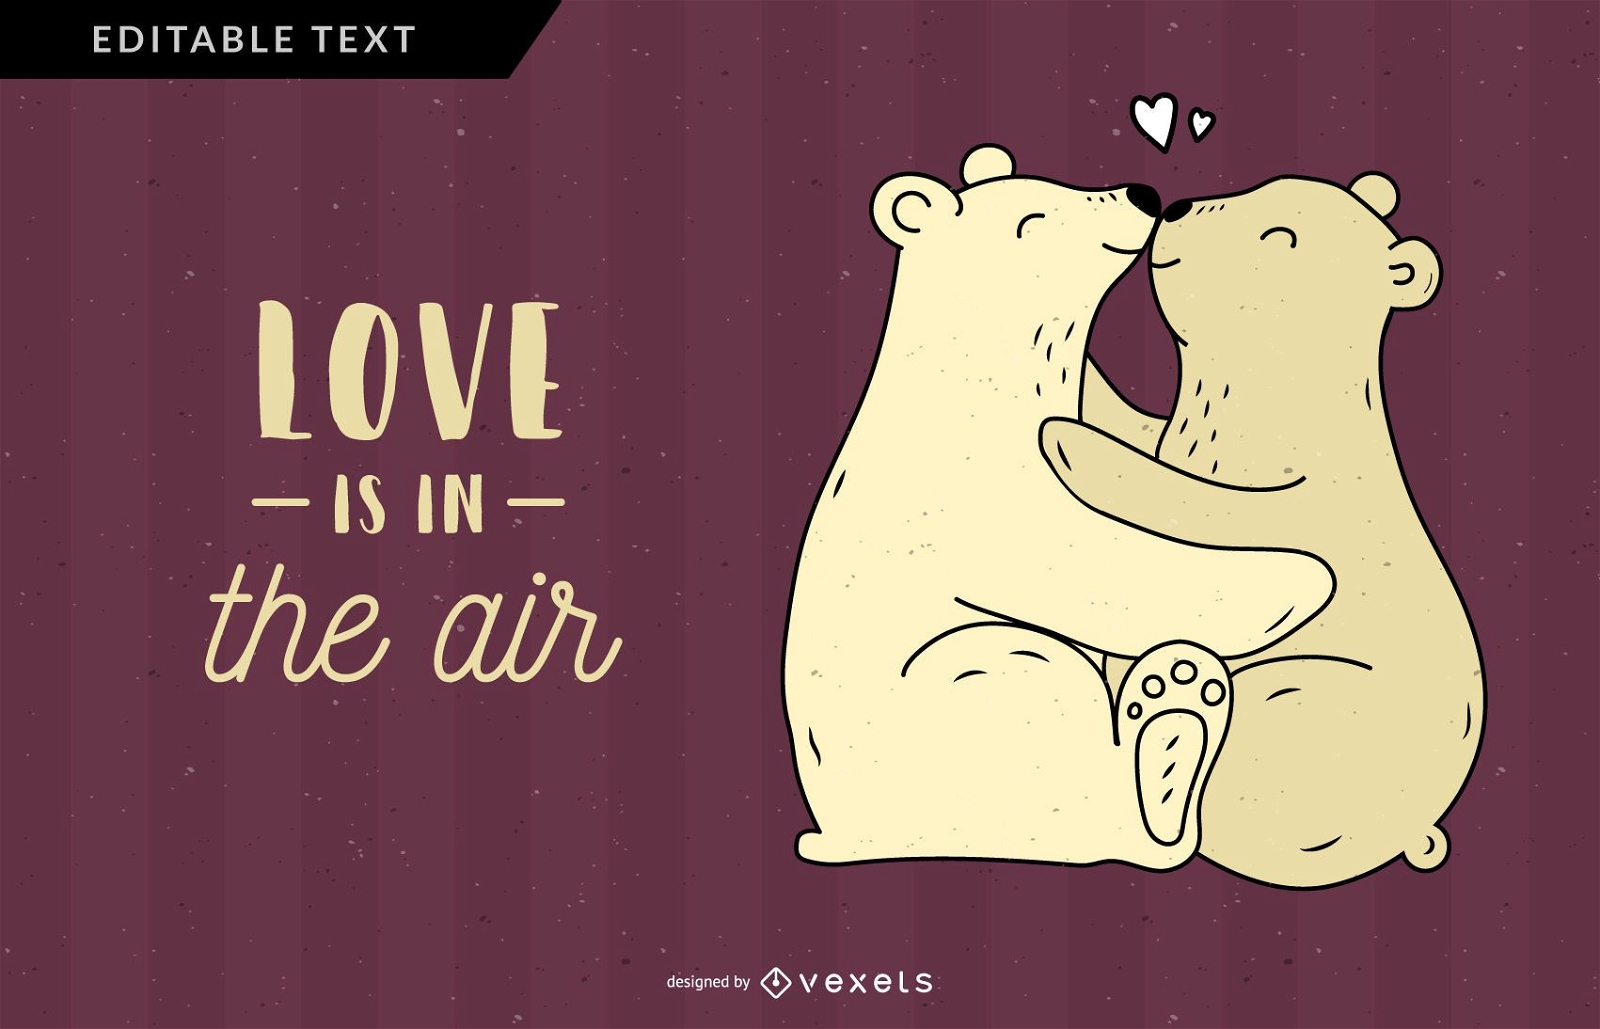 Ilustra??o do urso amor est? no ar